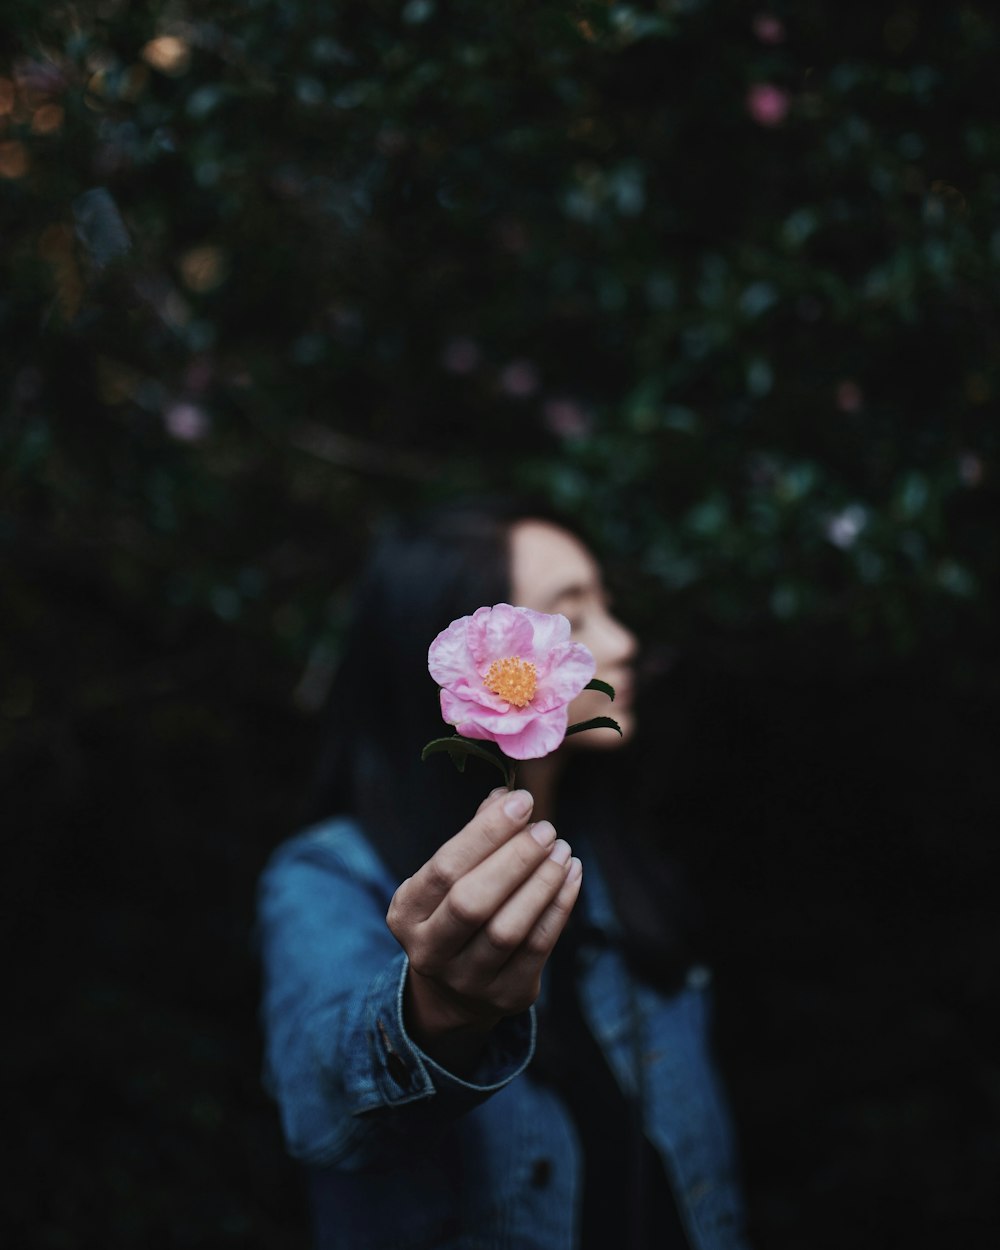 분홍색 꽃잎이 달린 꽃을 들고 있는 여자의 선택적 초점 사진